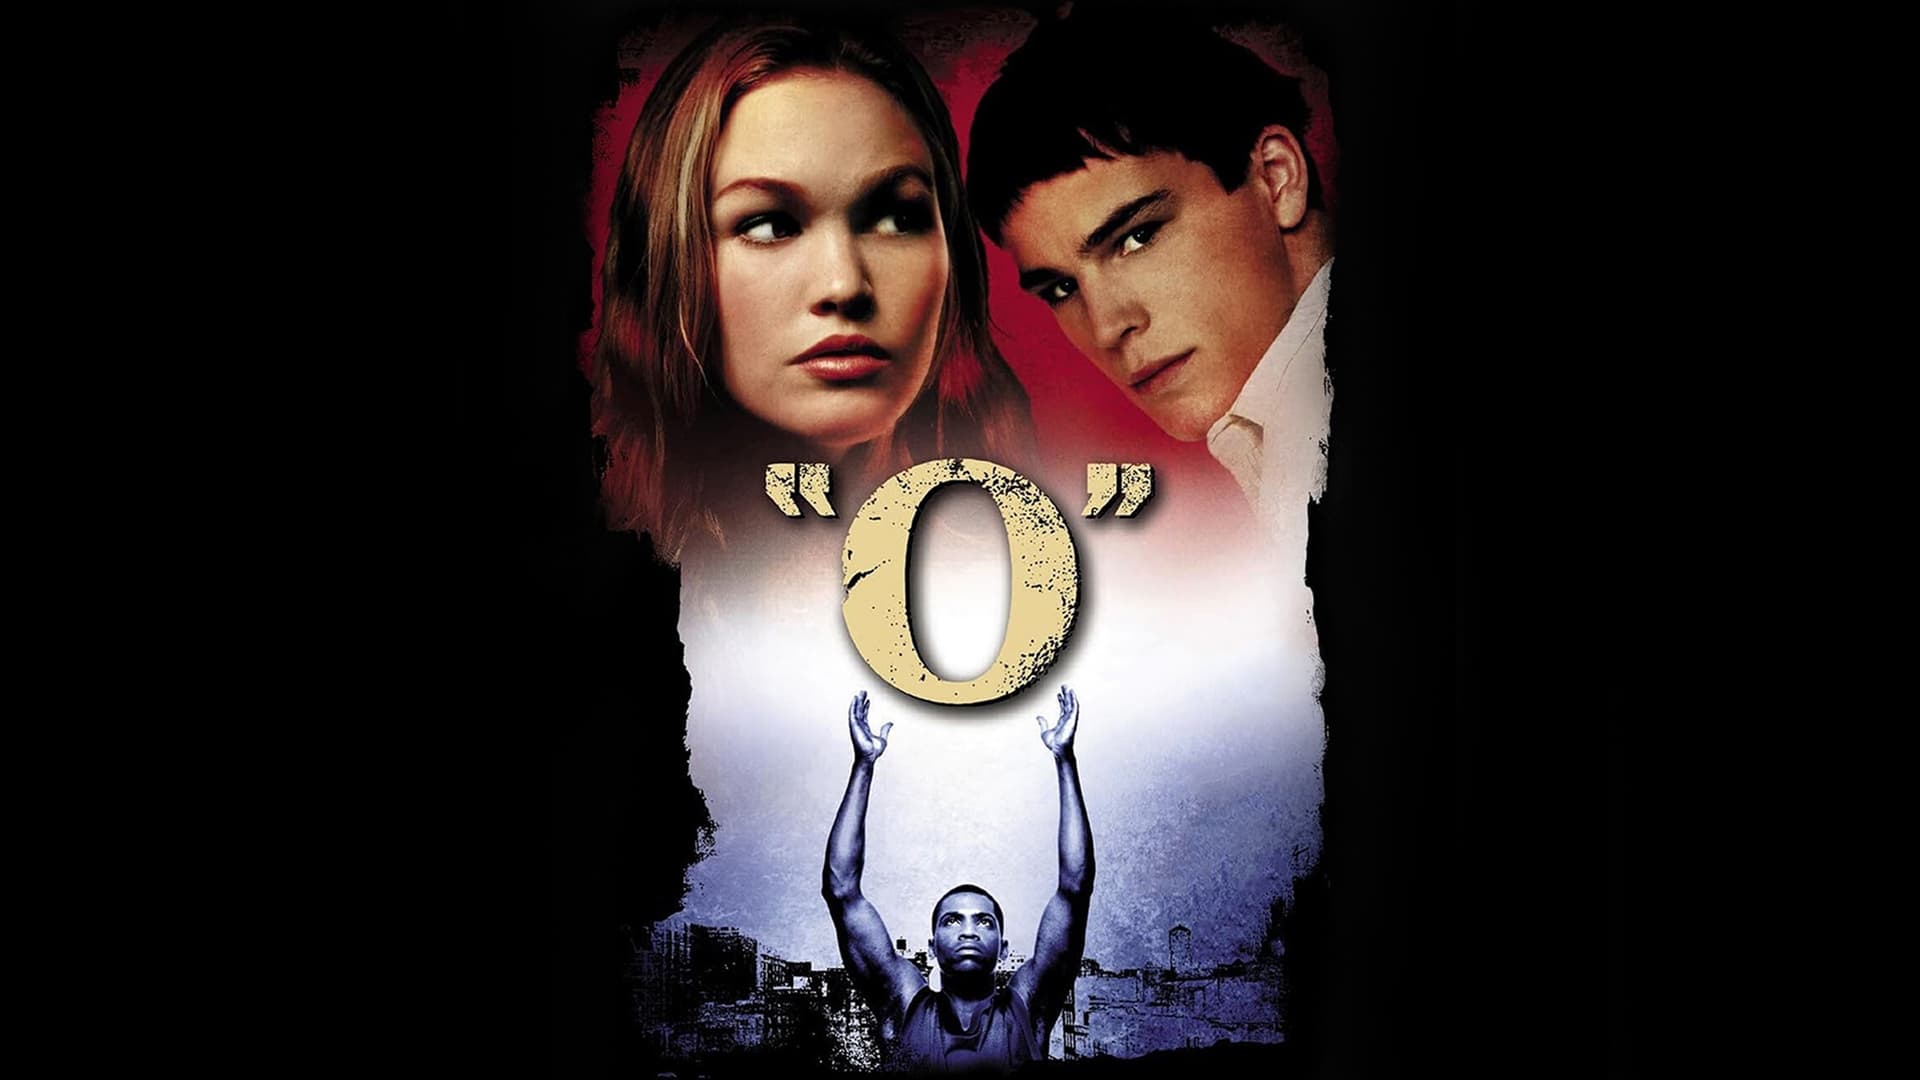 O (2001)